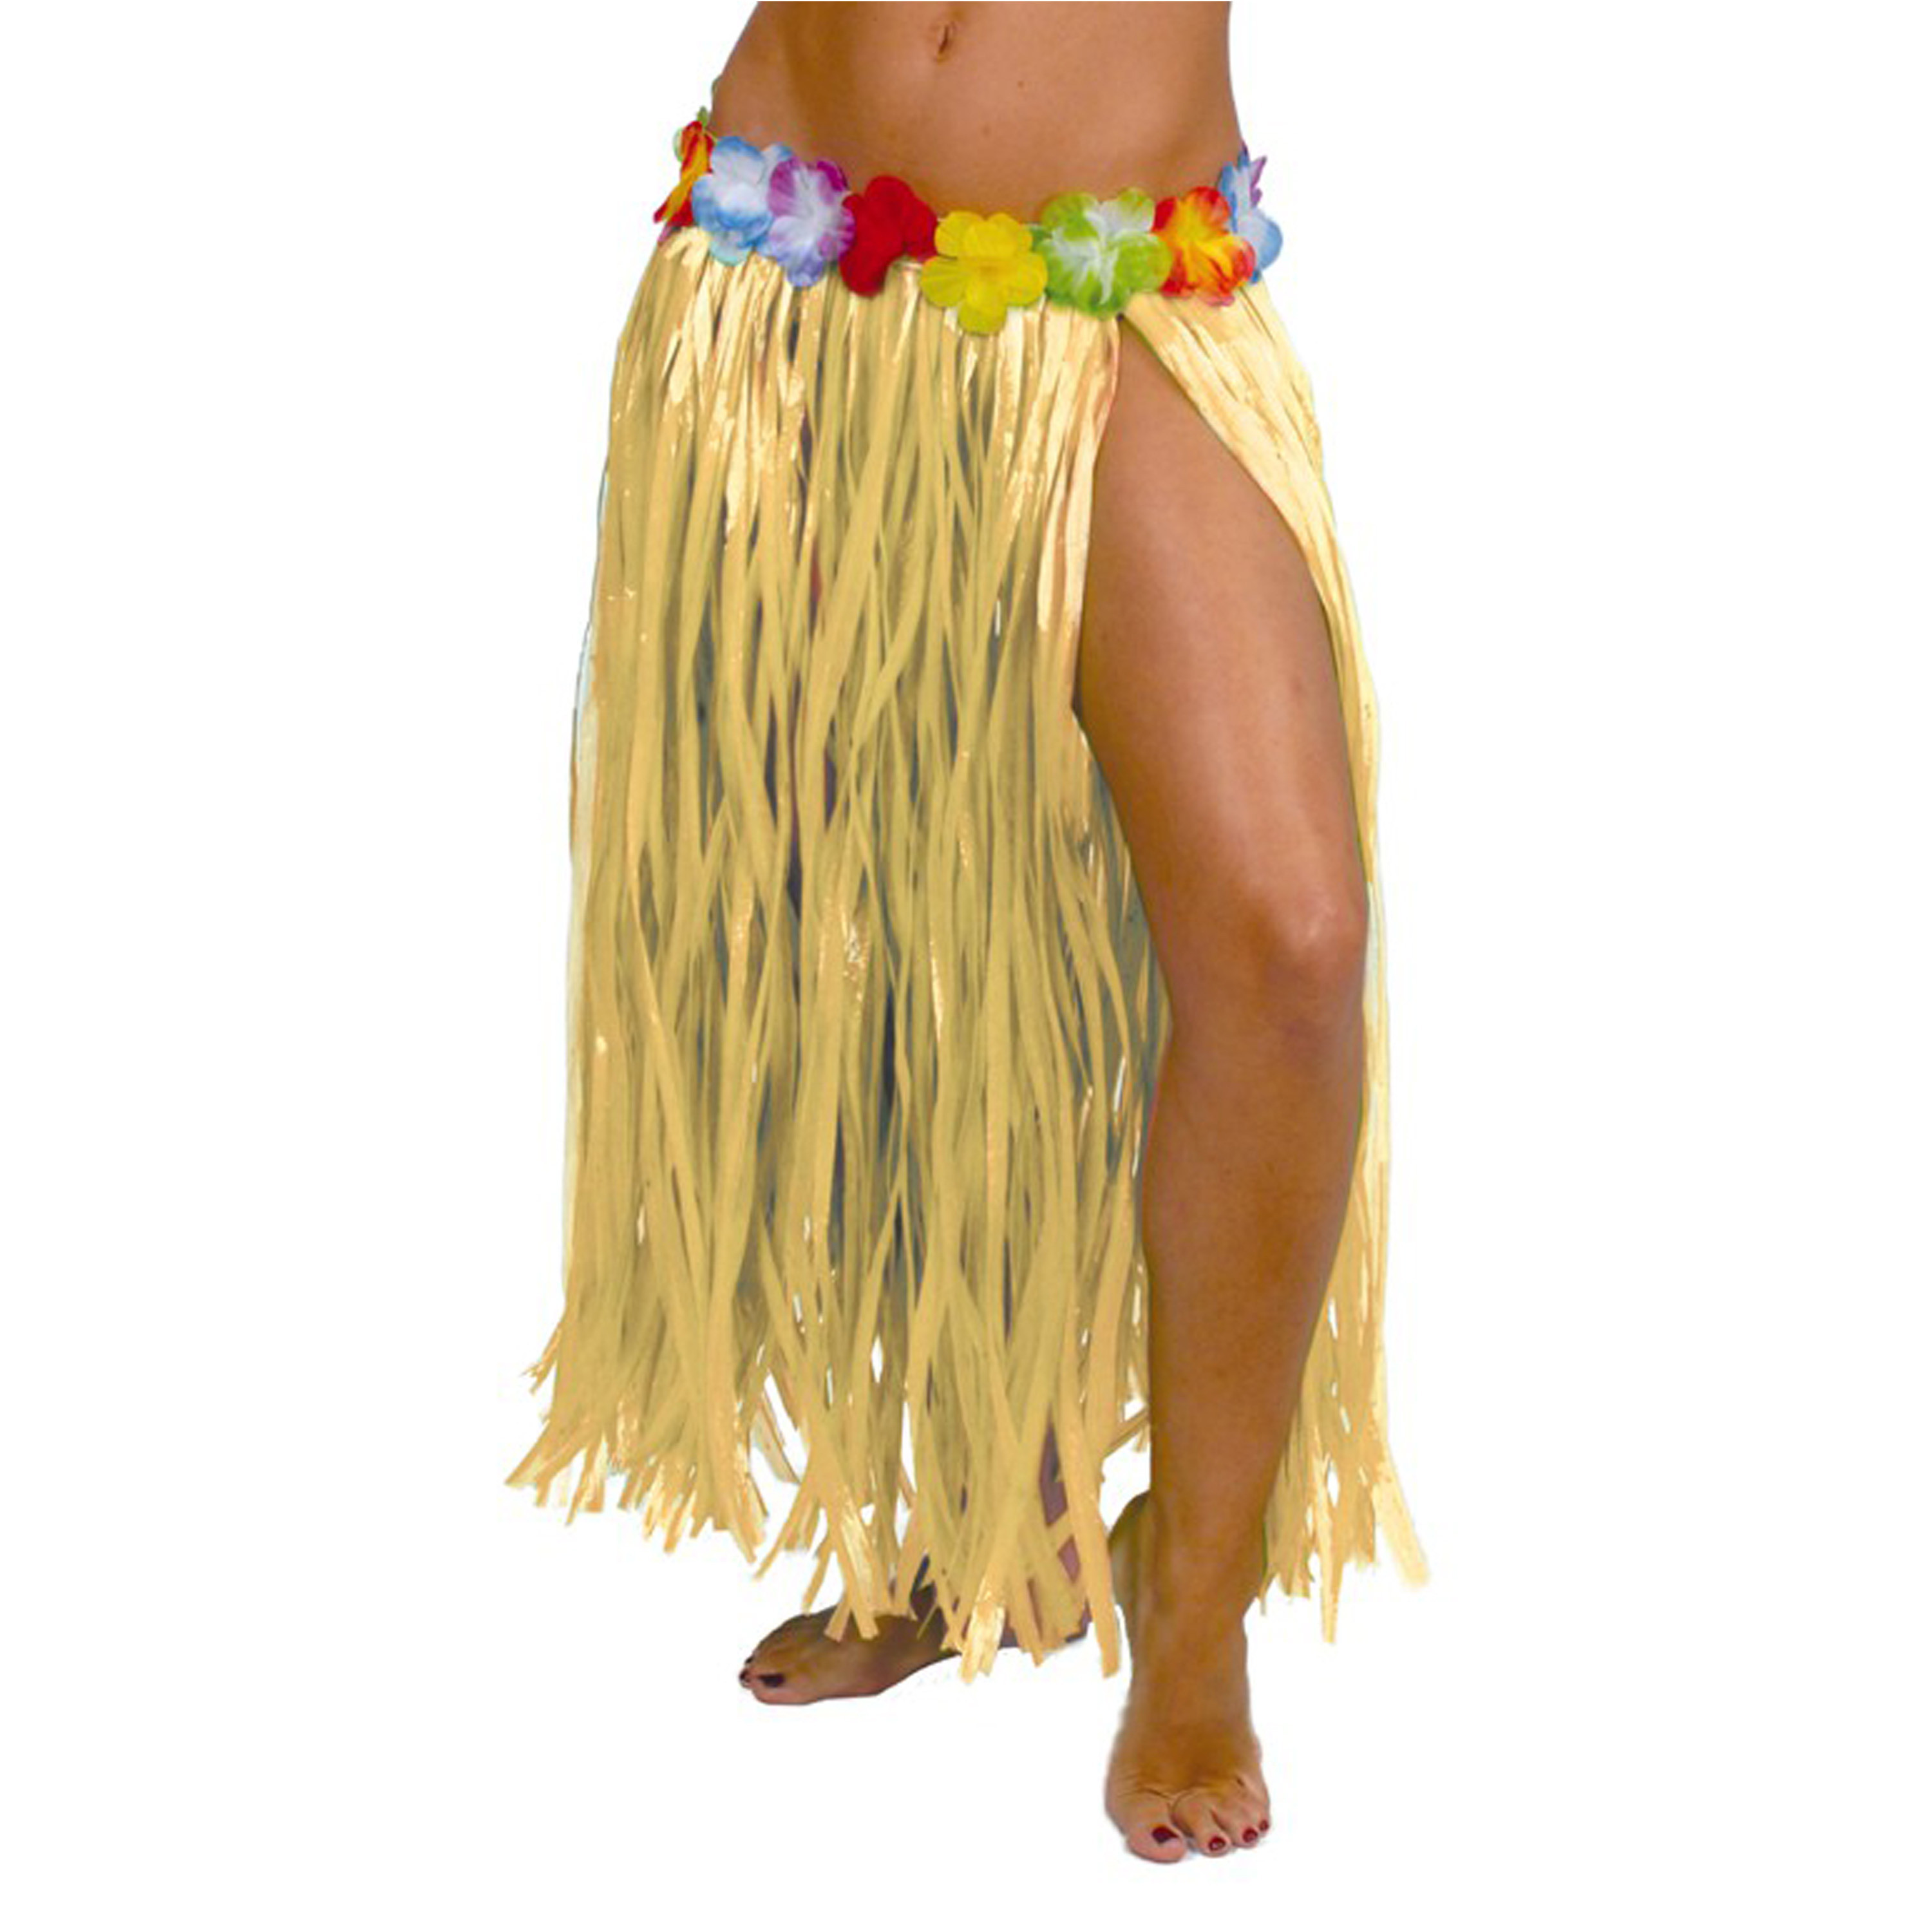 Toppers - Hawaii verkleed rokje - voor volwassenen - naturel - 75 cm - rieten hoela rokje - tropisch